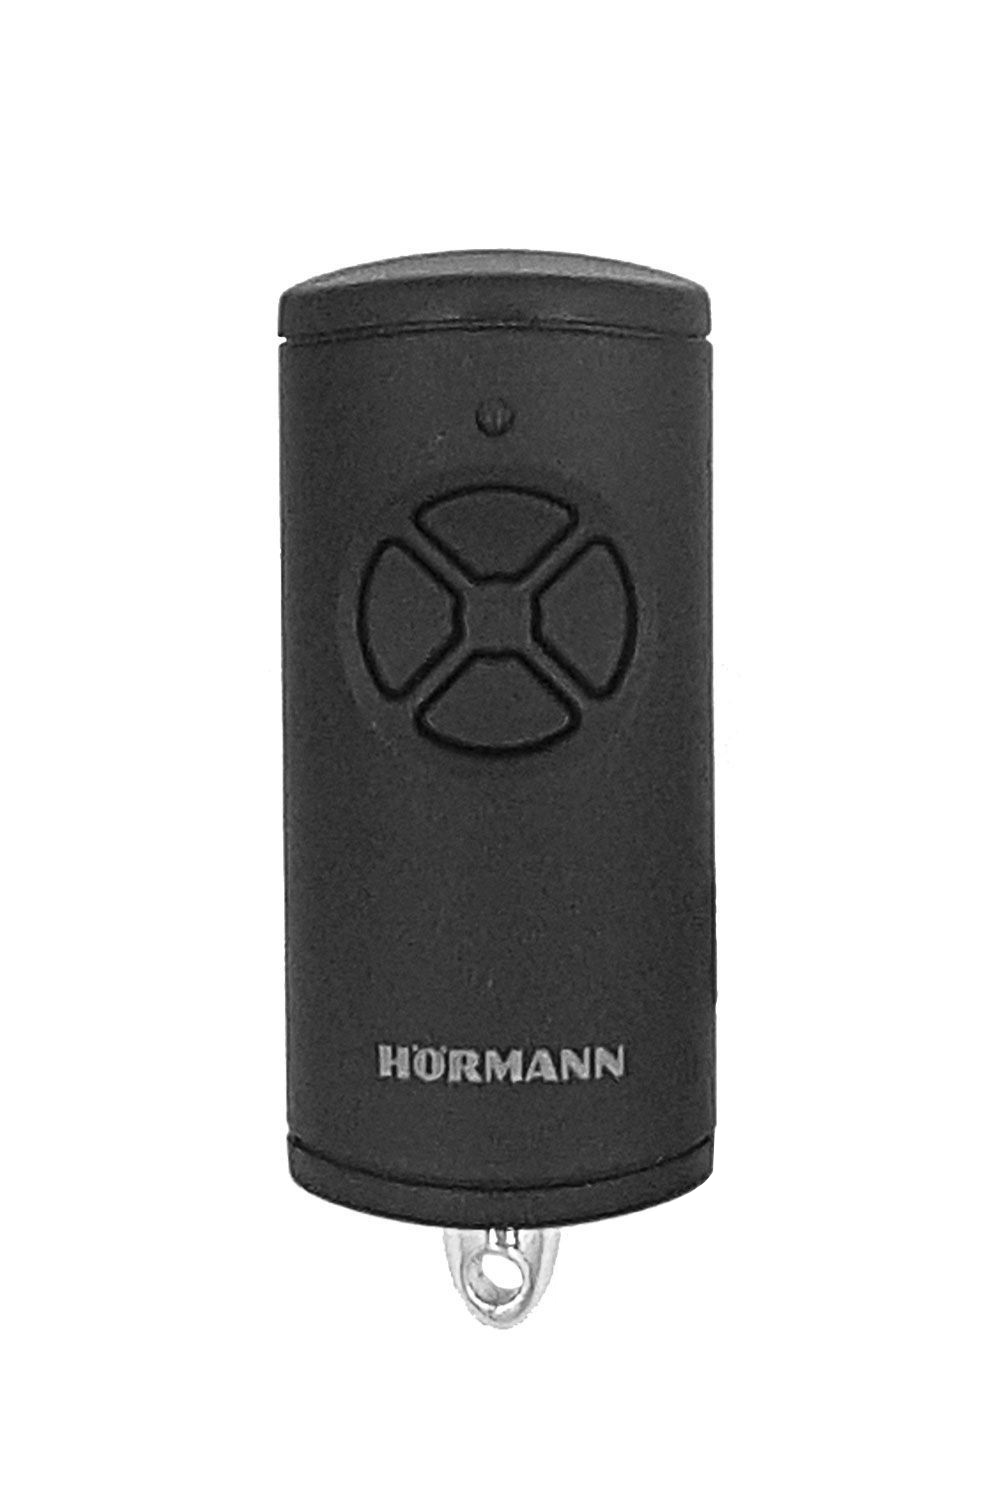 3x Hörmann BiSecur HSE4 BS 868 Mhz Handsender Schwarz Matt mit verchromten Kappe 